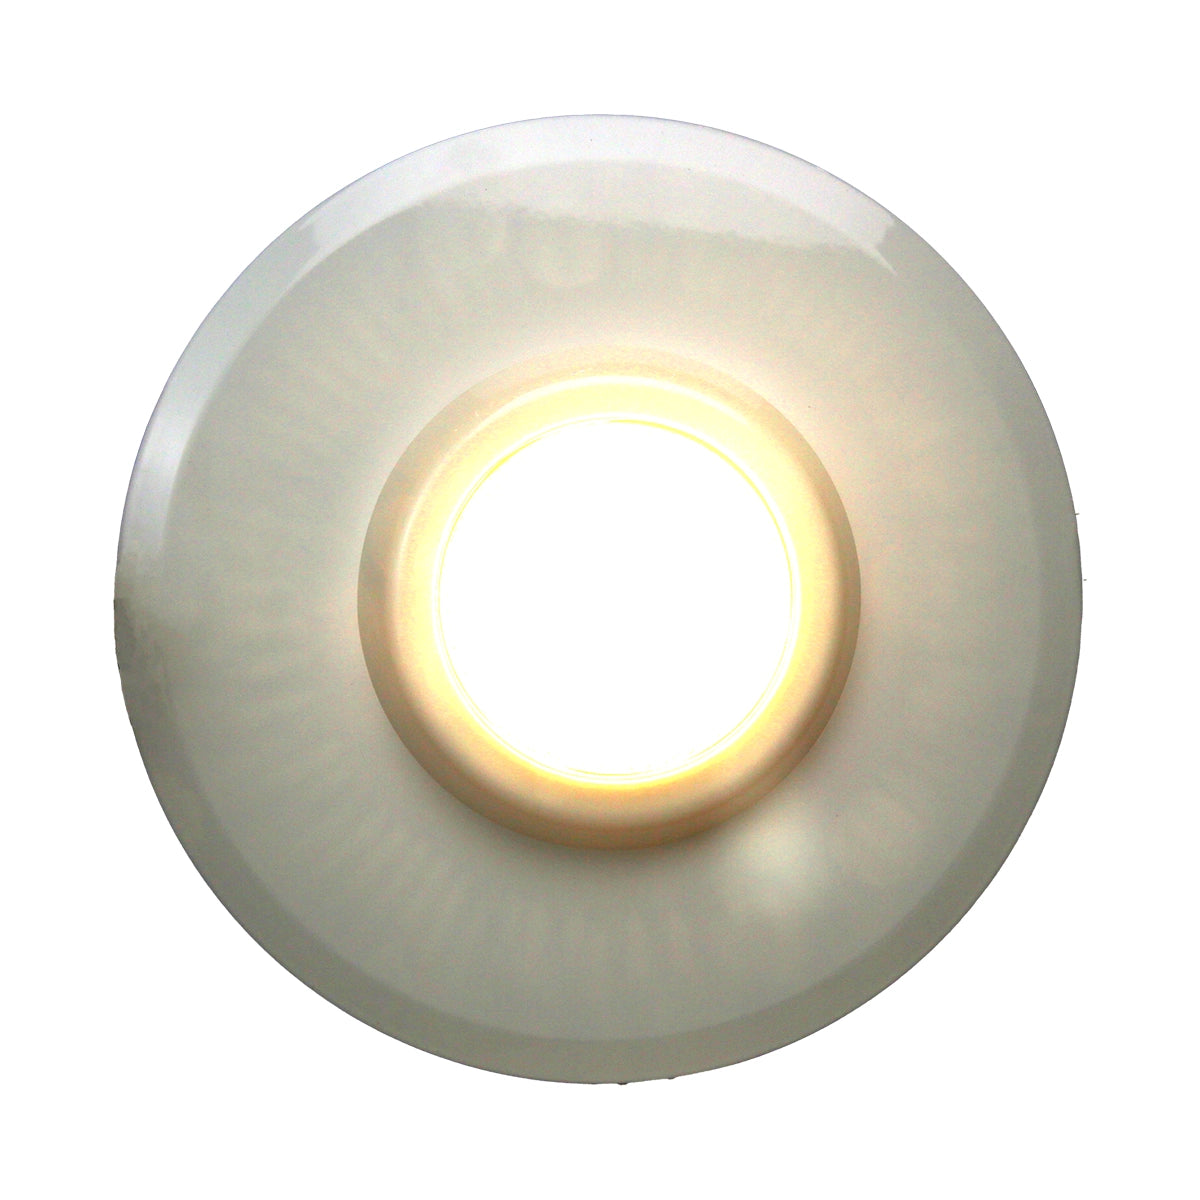 Commercial 25 Watt COB LED Down light, 3000K Warm White, Hospital light, Clinic light, Clean room light, Office light crystal optical glass lens